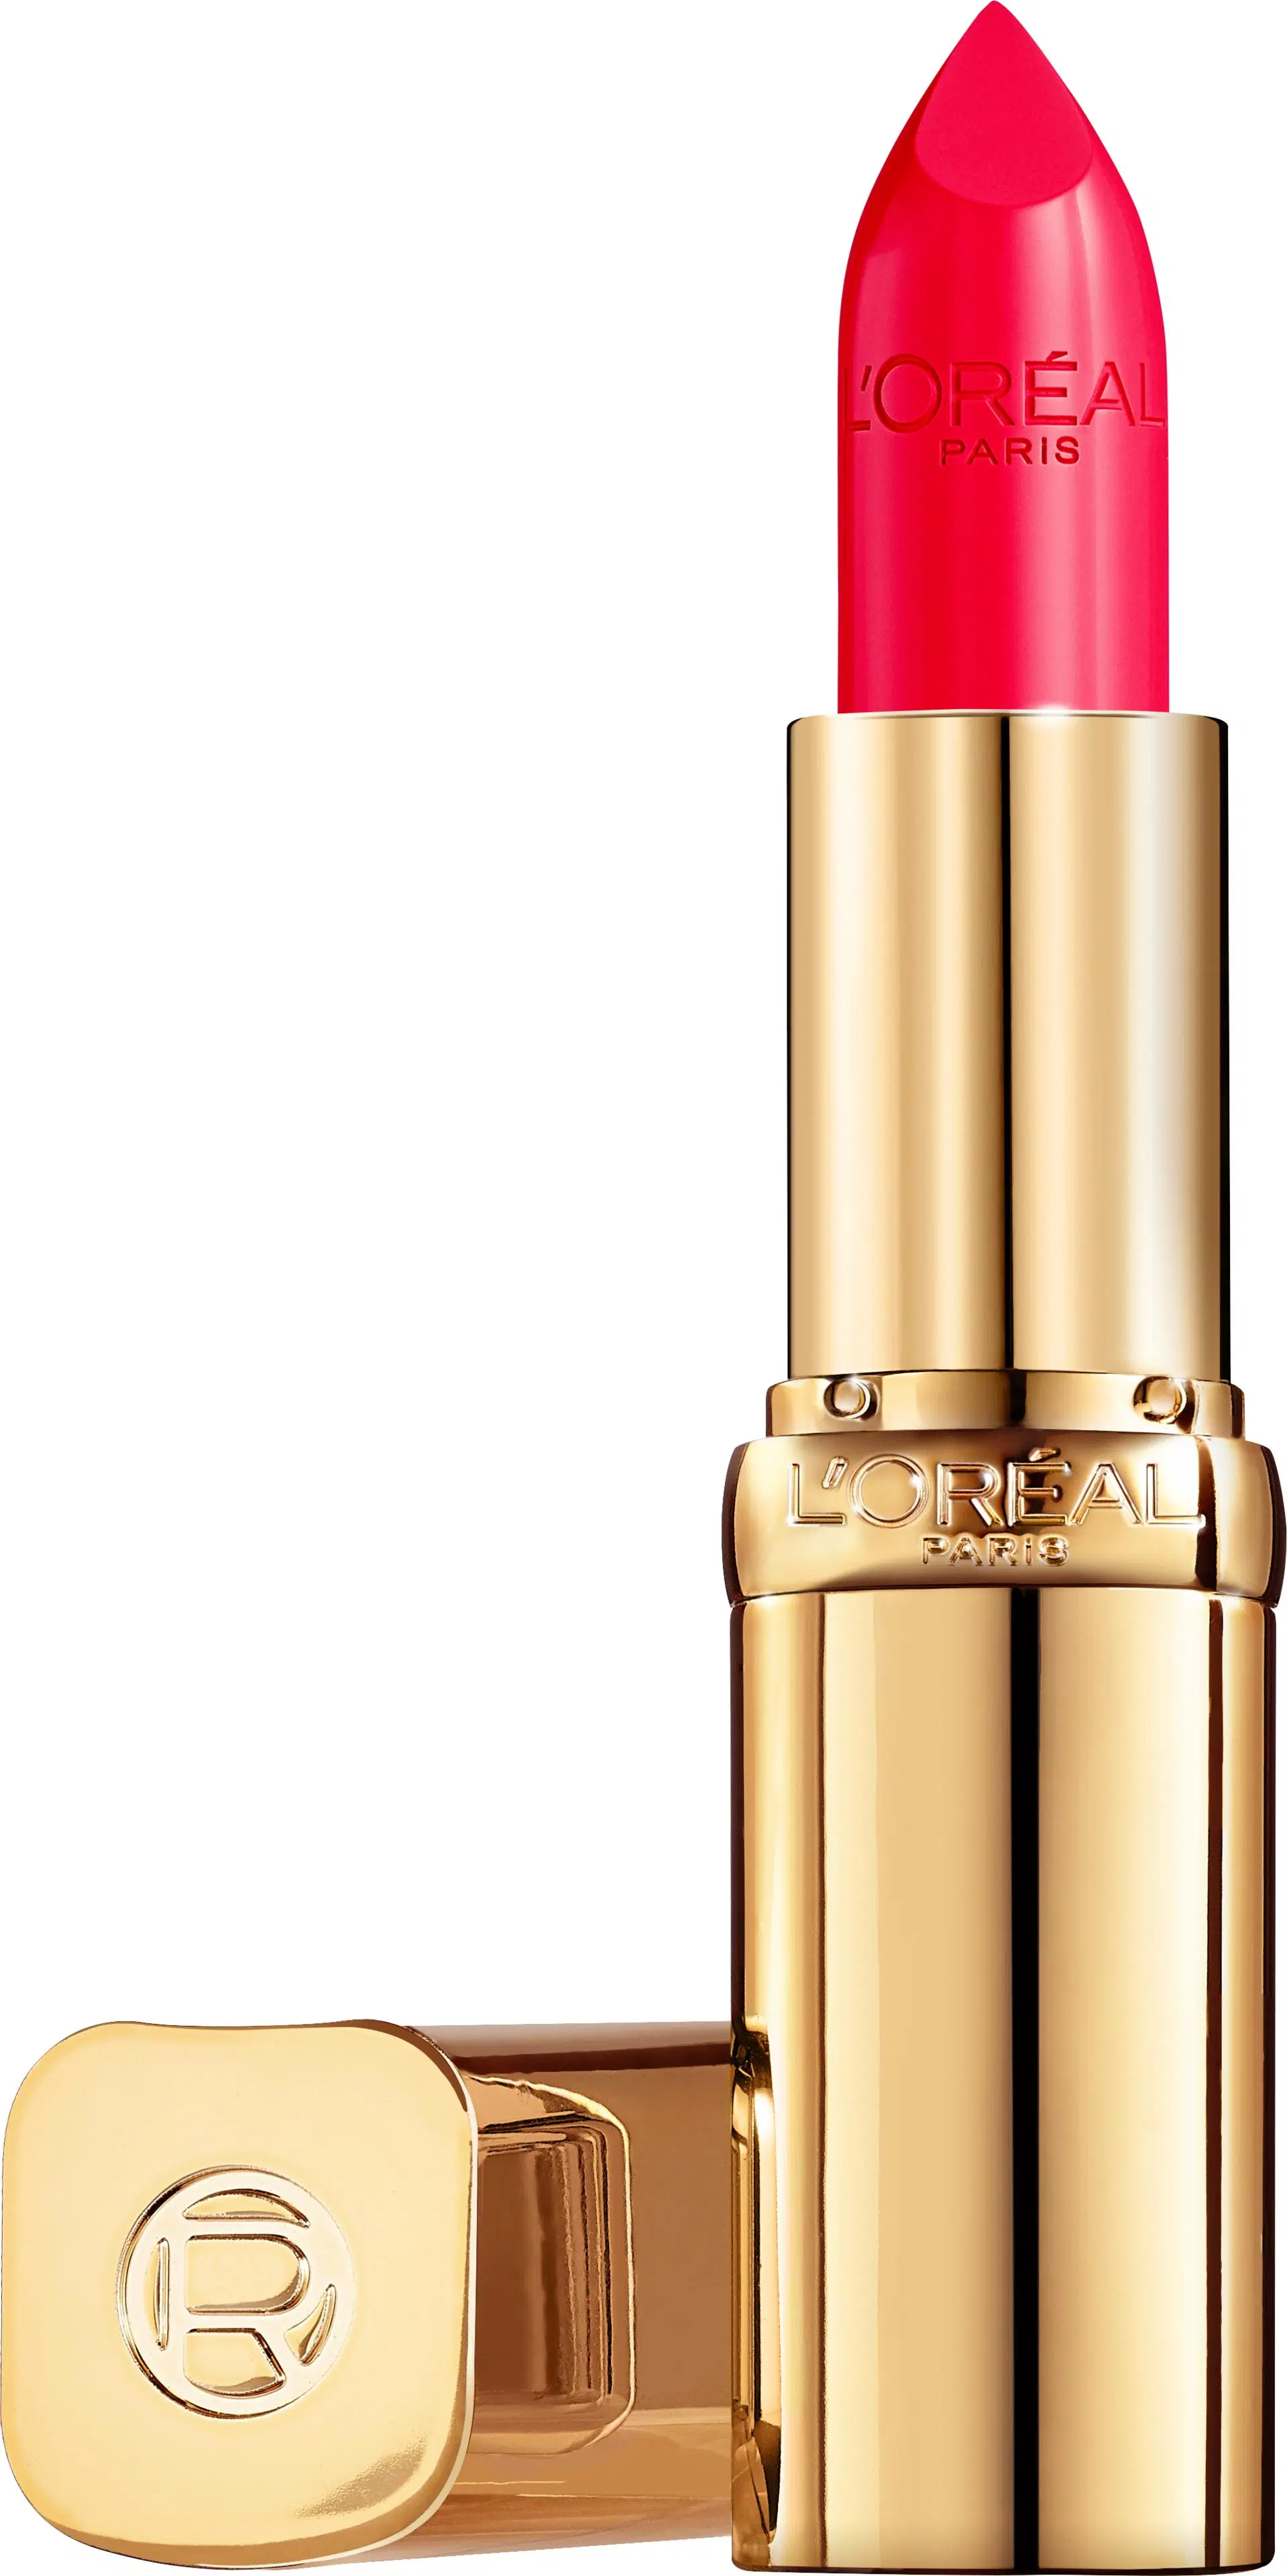 L'Oréal Paris Color Riche Satin 119 Vanities huulipuna 4,8 g